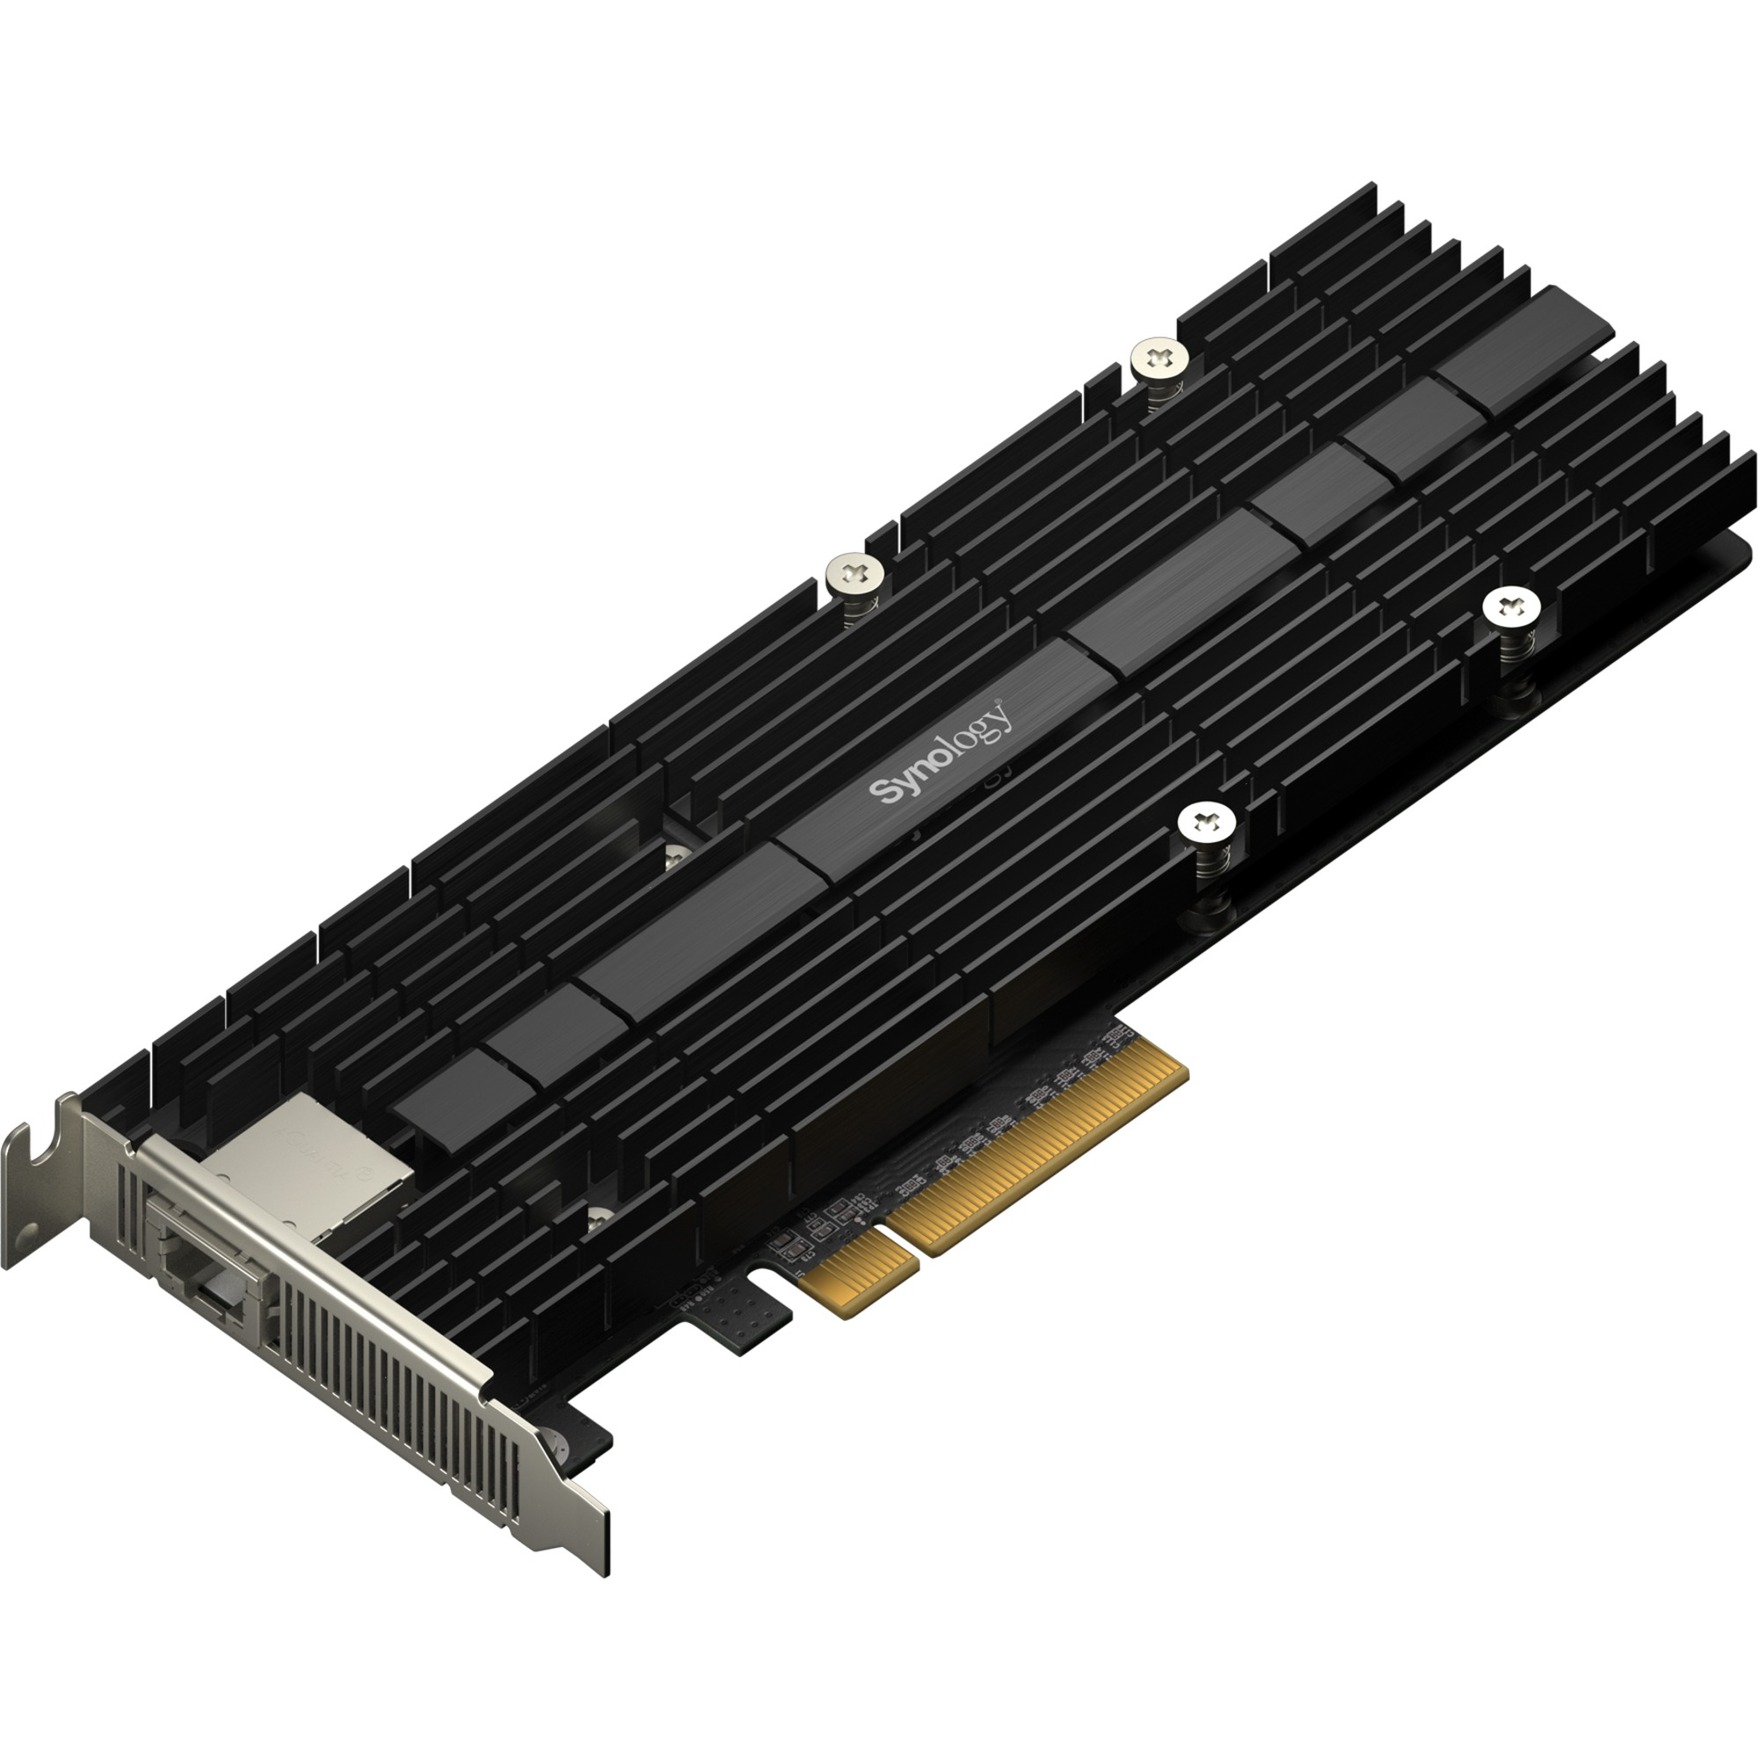 Image of Alternate - E10M20-T1 PCIe, LAN-Adapter online einkaufen bei Alternate